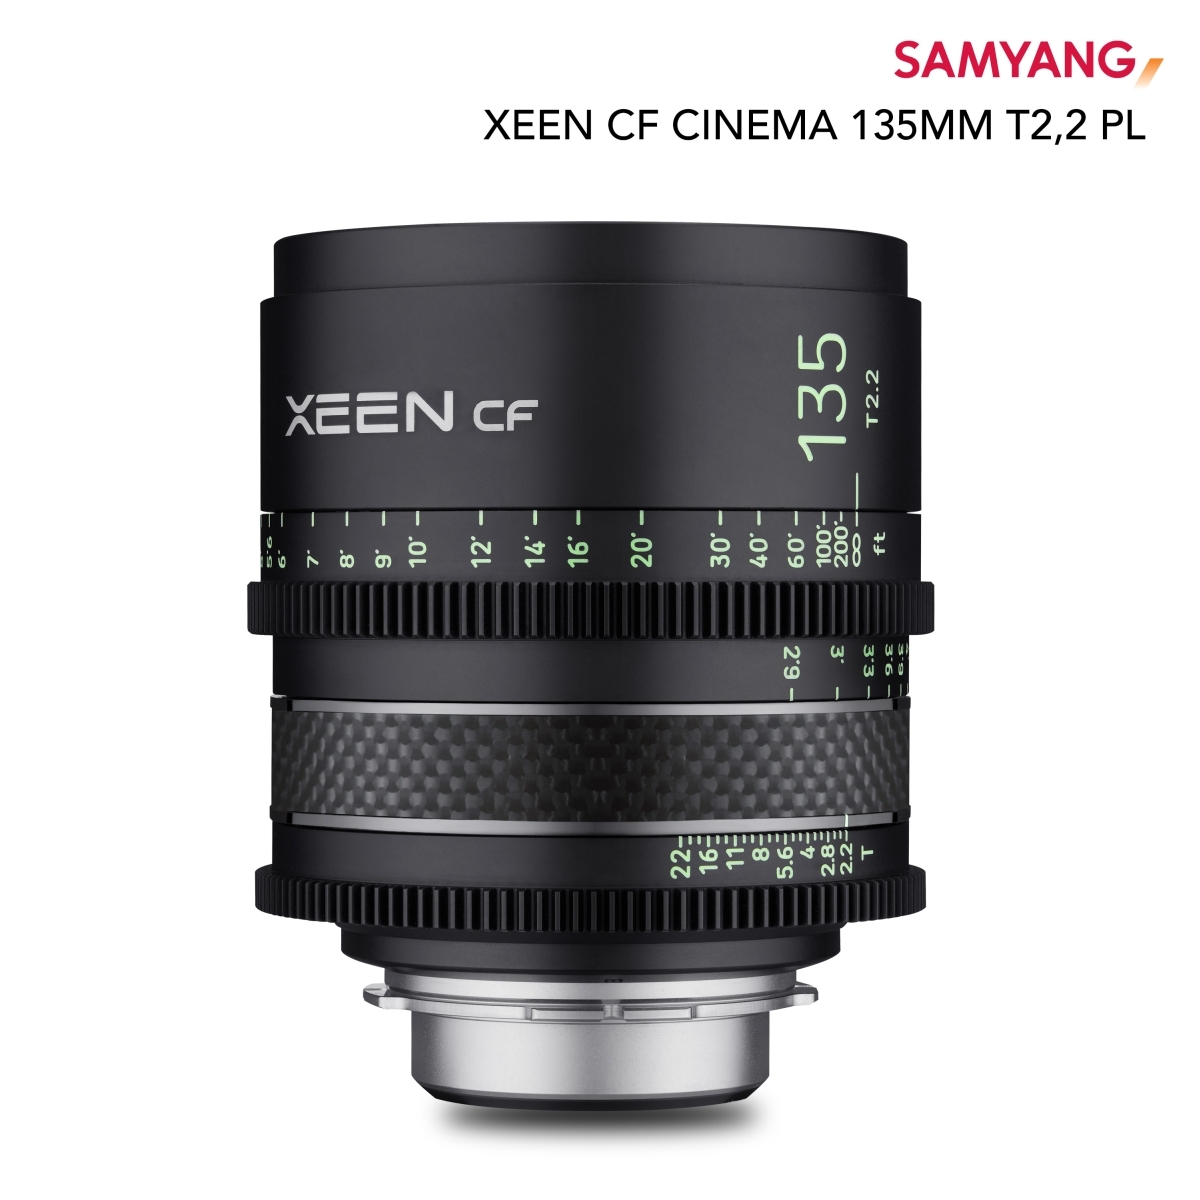 XEEN CF Cinema 135mm T2,2 PL volbeeld